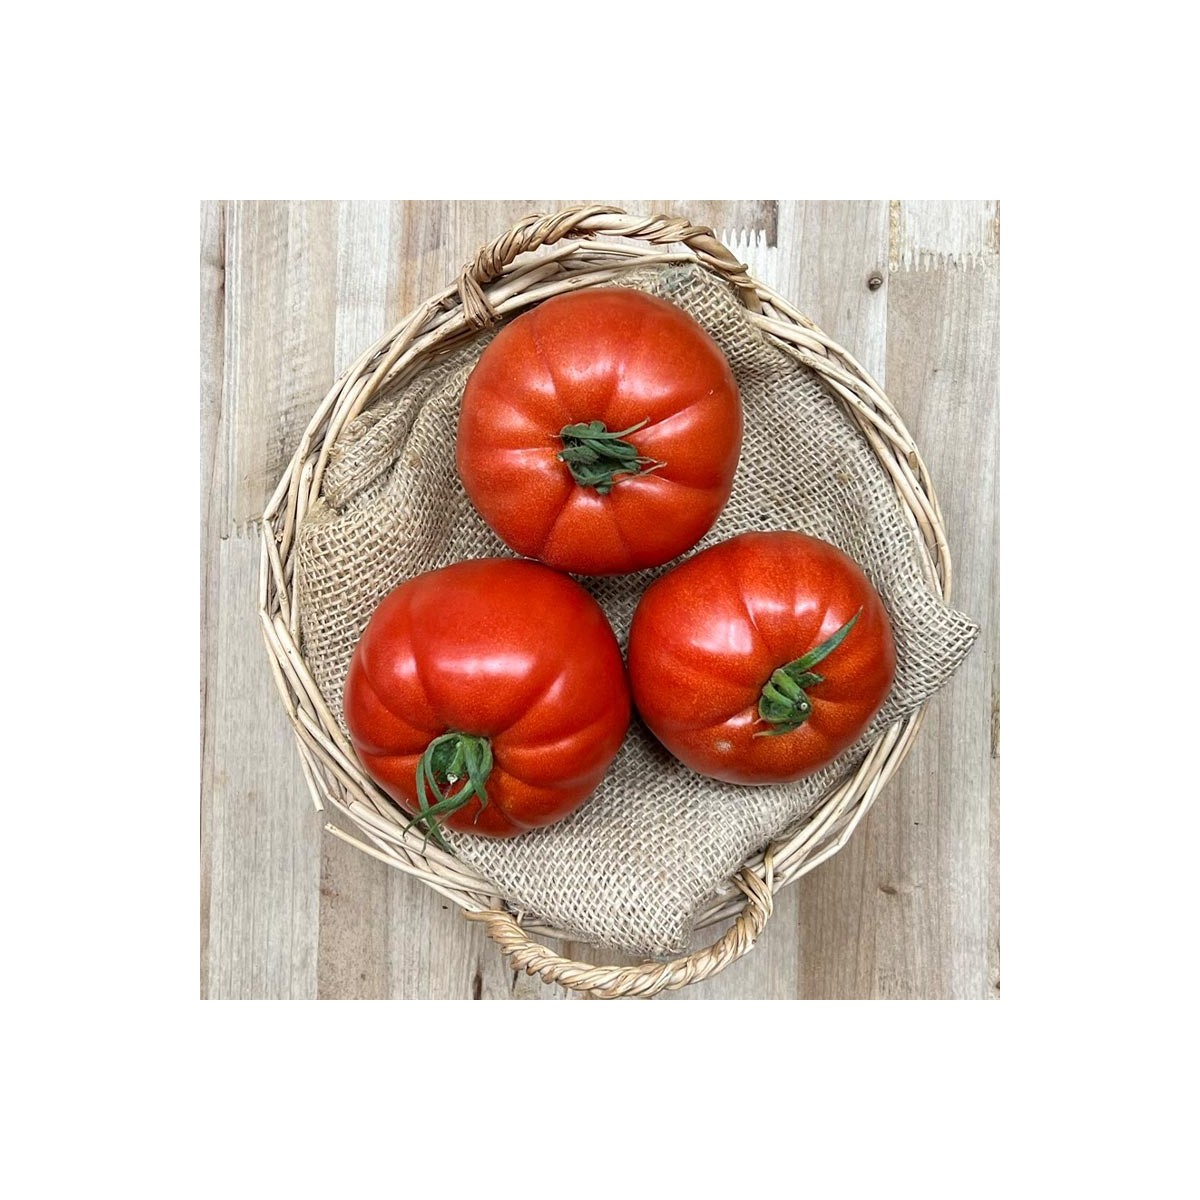 Tomate Huevo de Toro - Selección de tomates -1- Lo mejor de la fruta